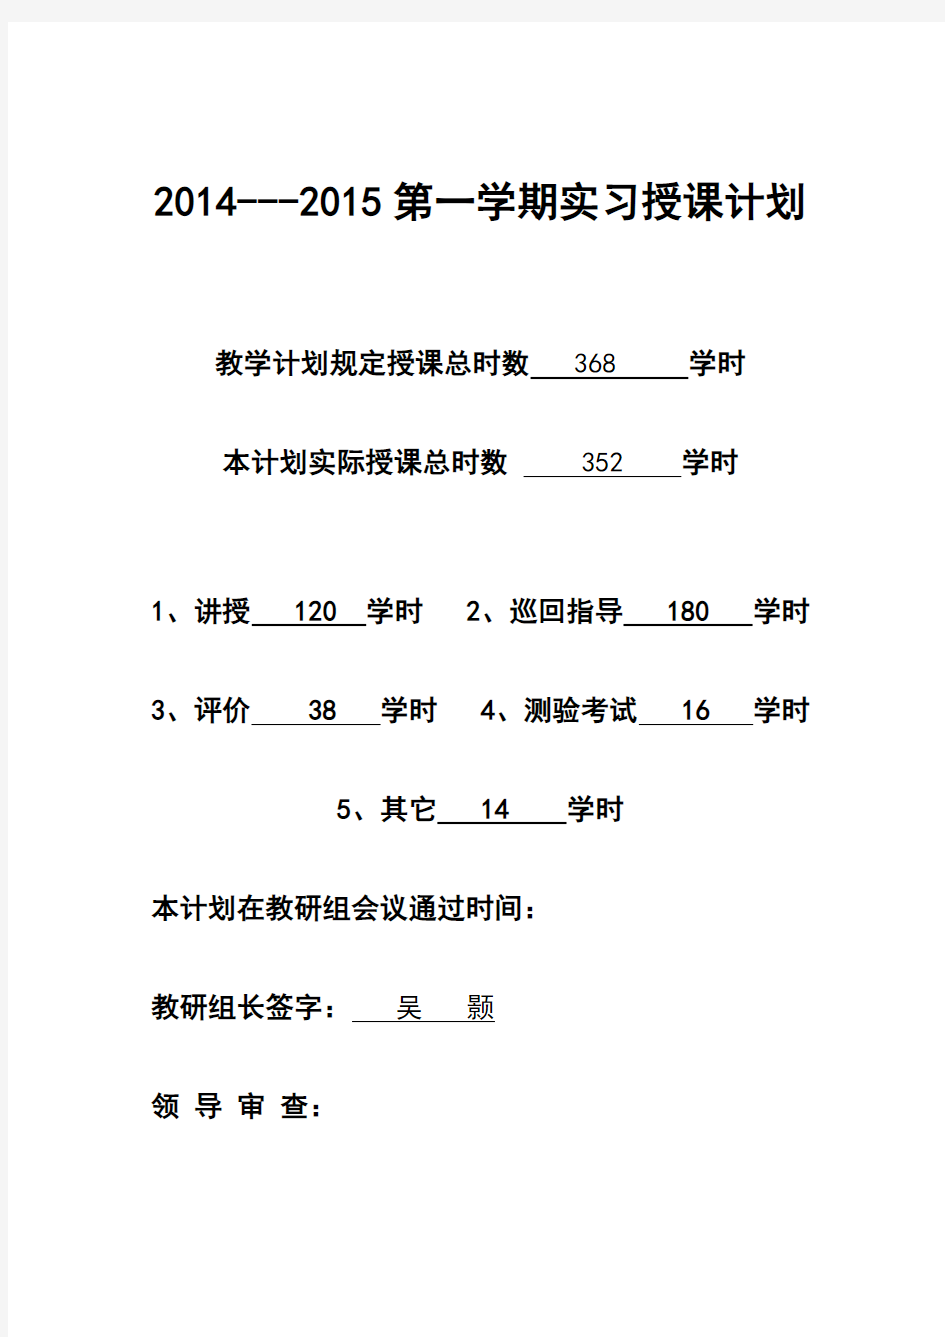 2014-2015第一学期焊工实训授课计划表